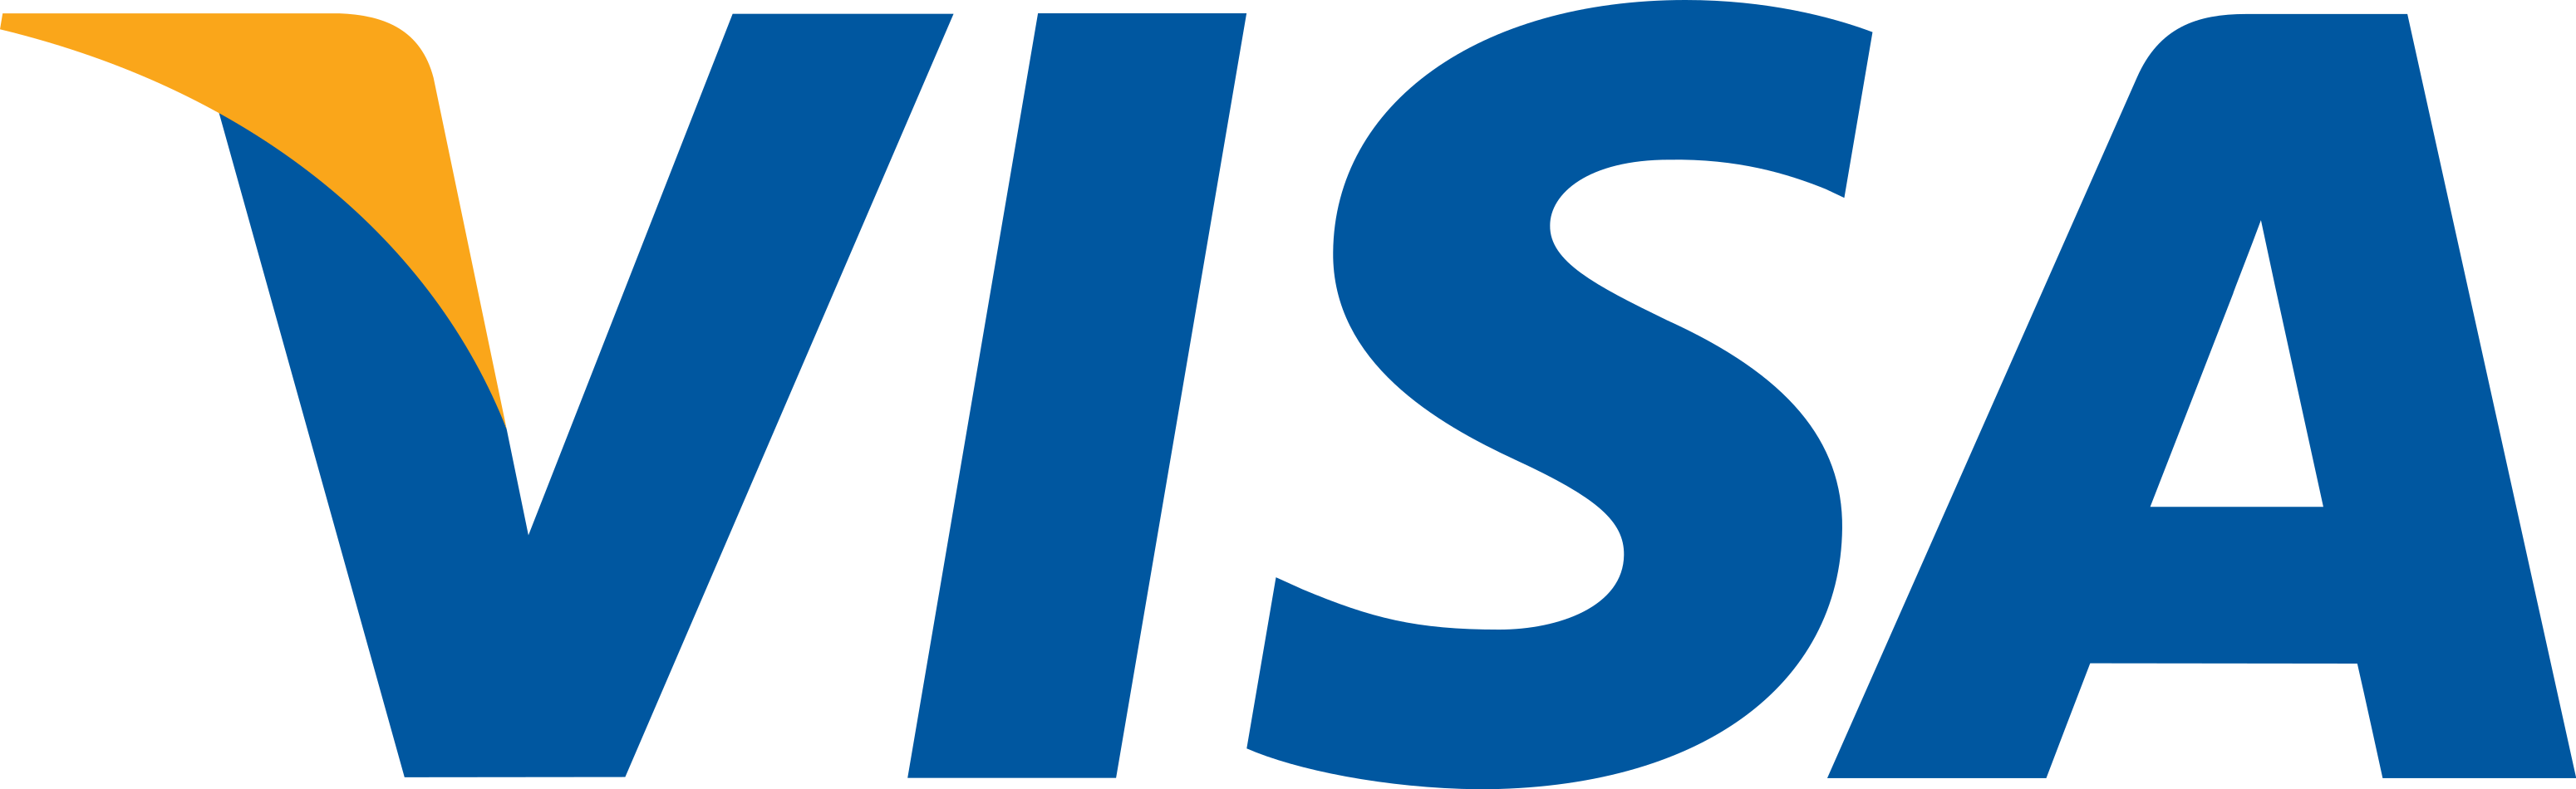 visa logo 4 - Visa Logo